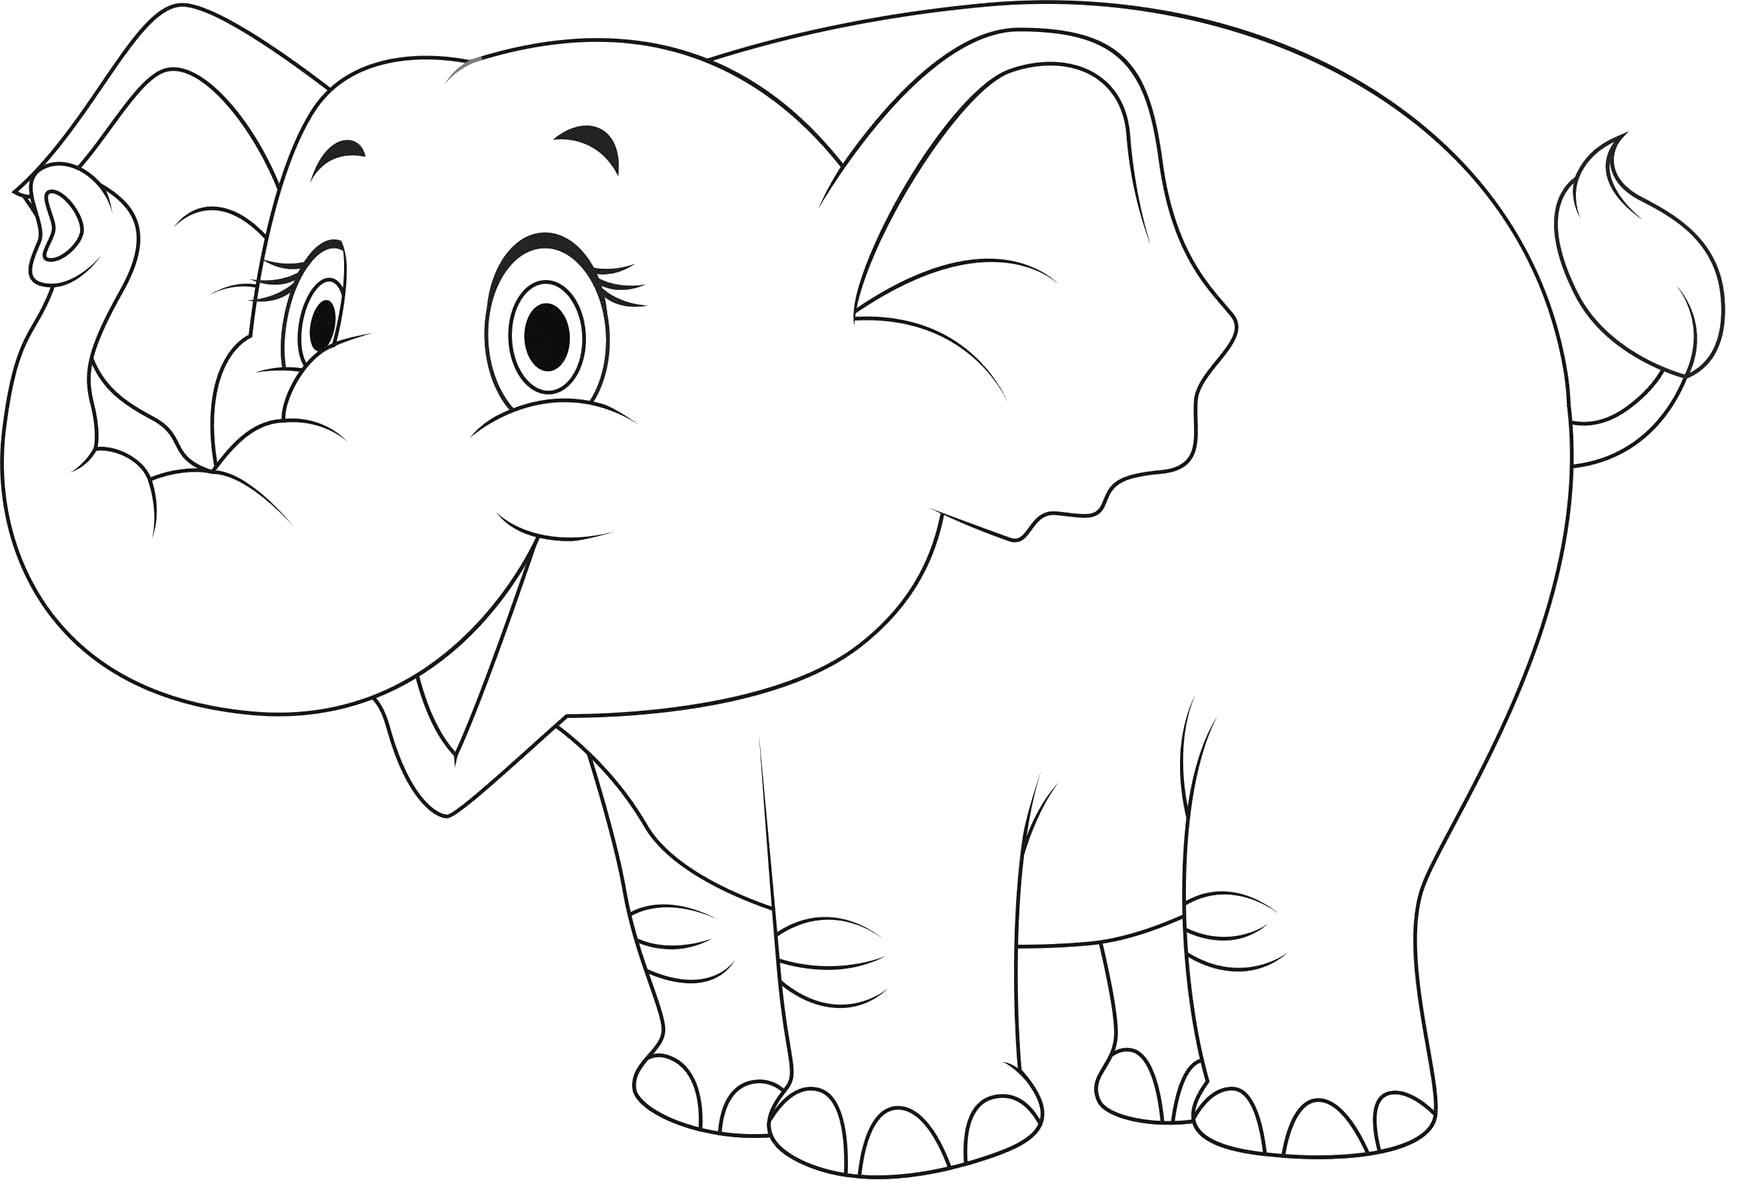 Играть в раскраски Слонов, которые можно распечатать онлайн